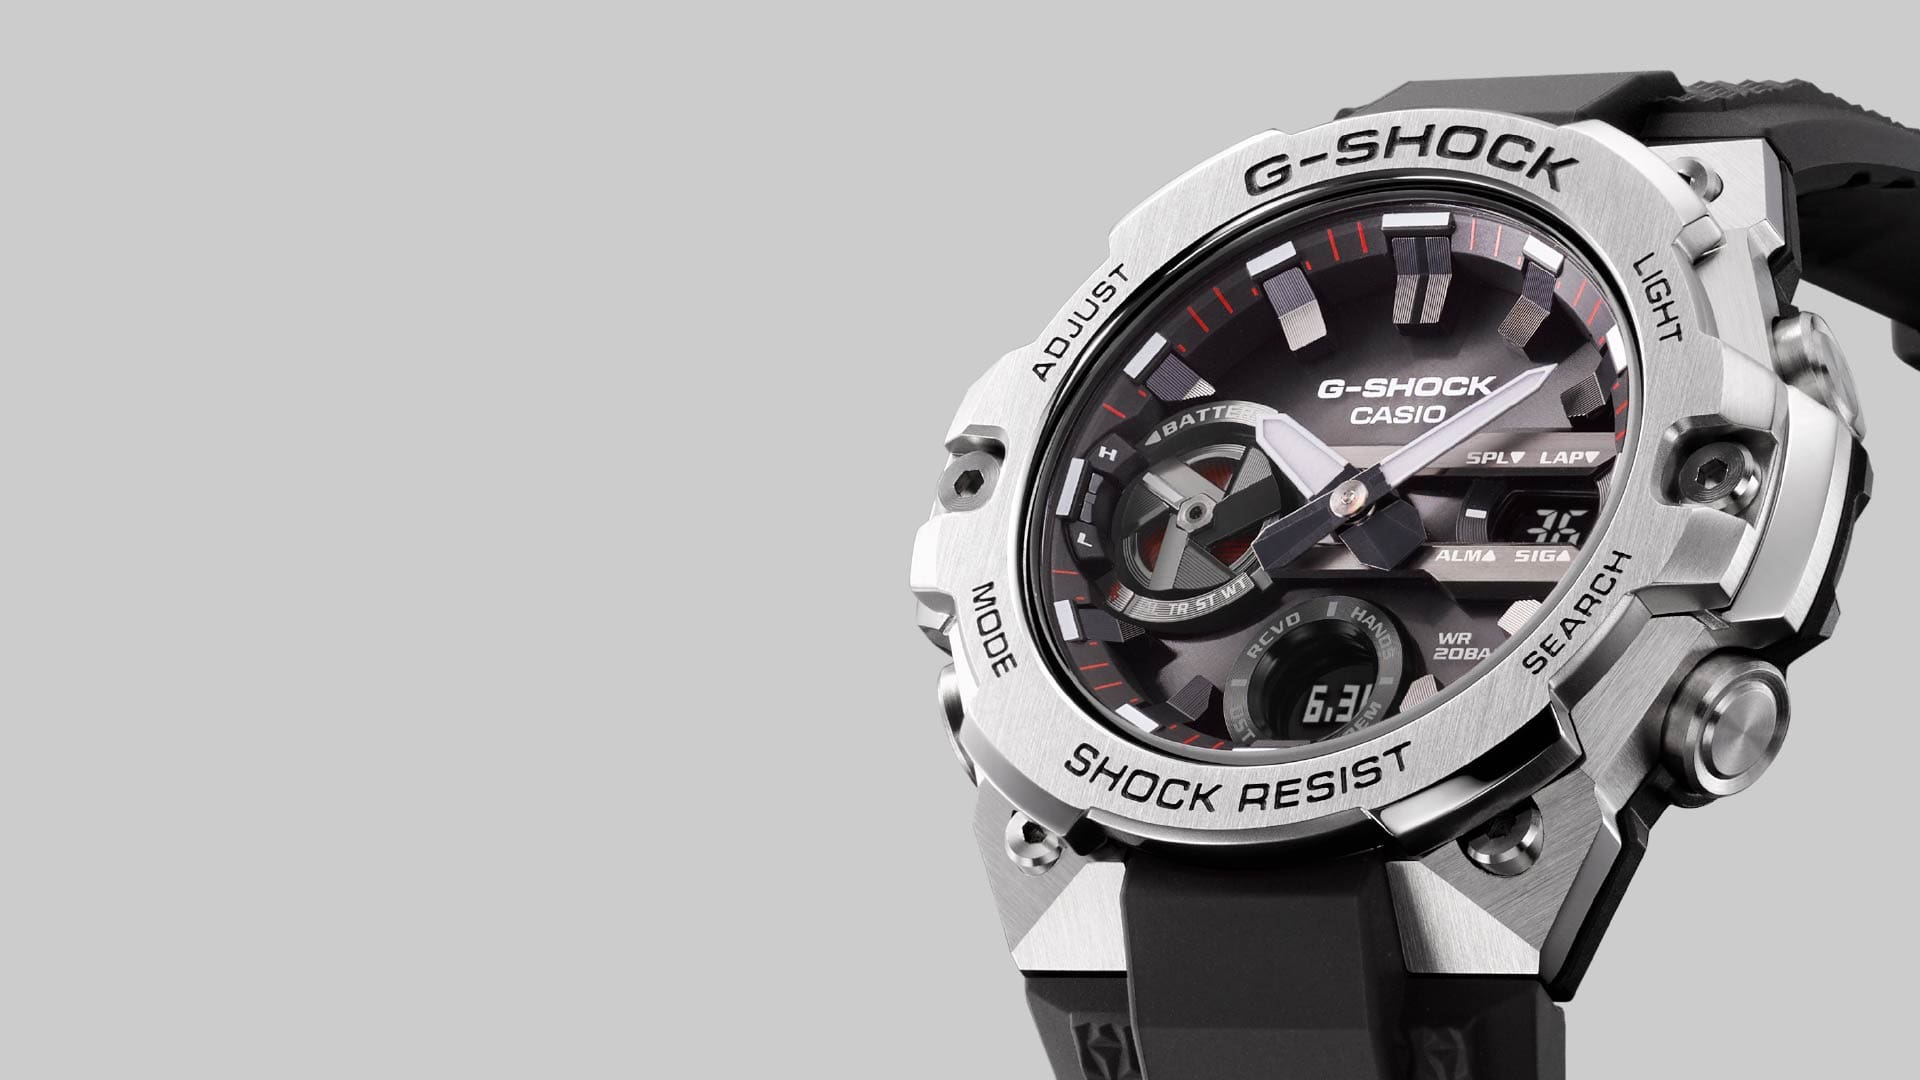 đồng hồ G-Shock GST-B400